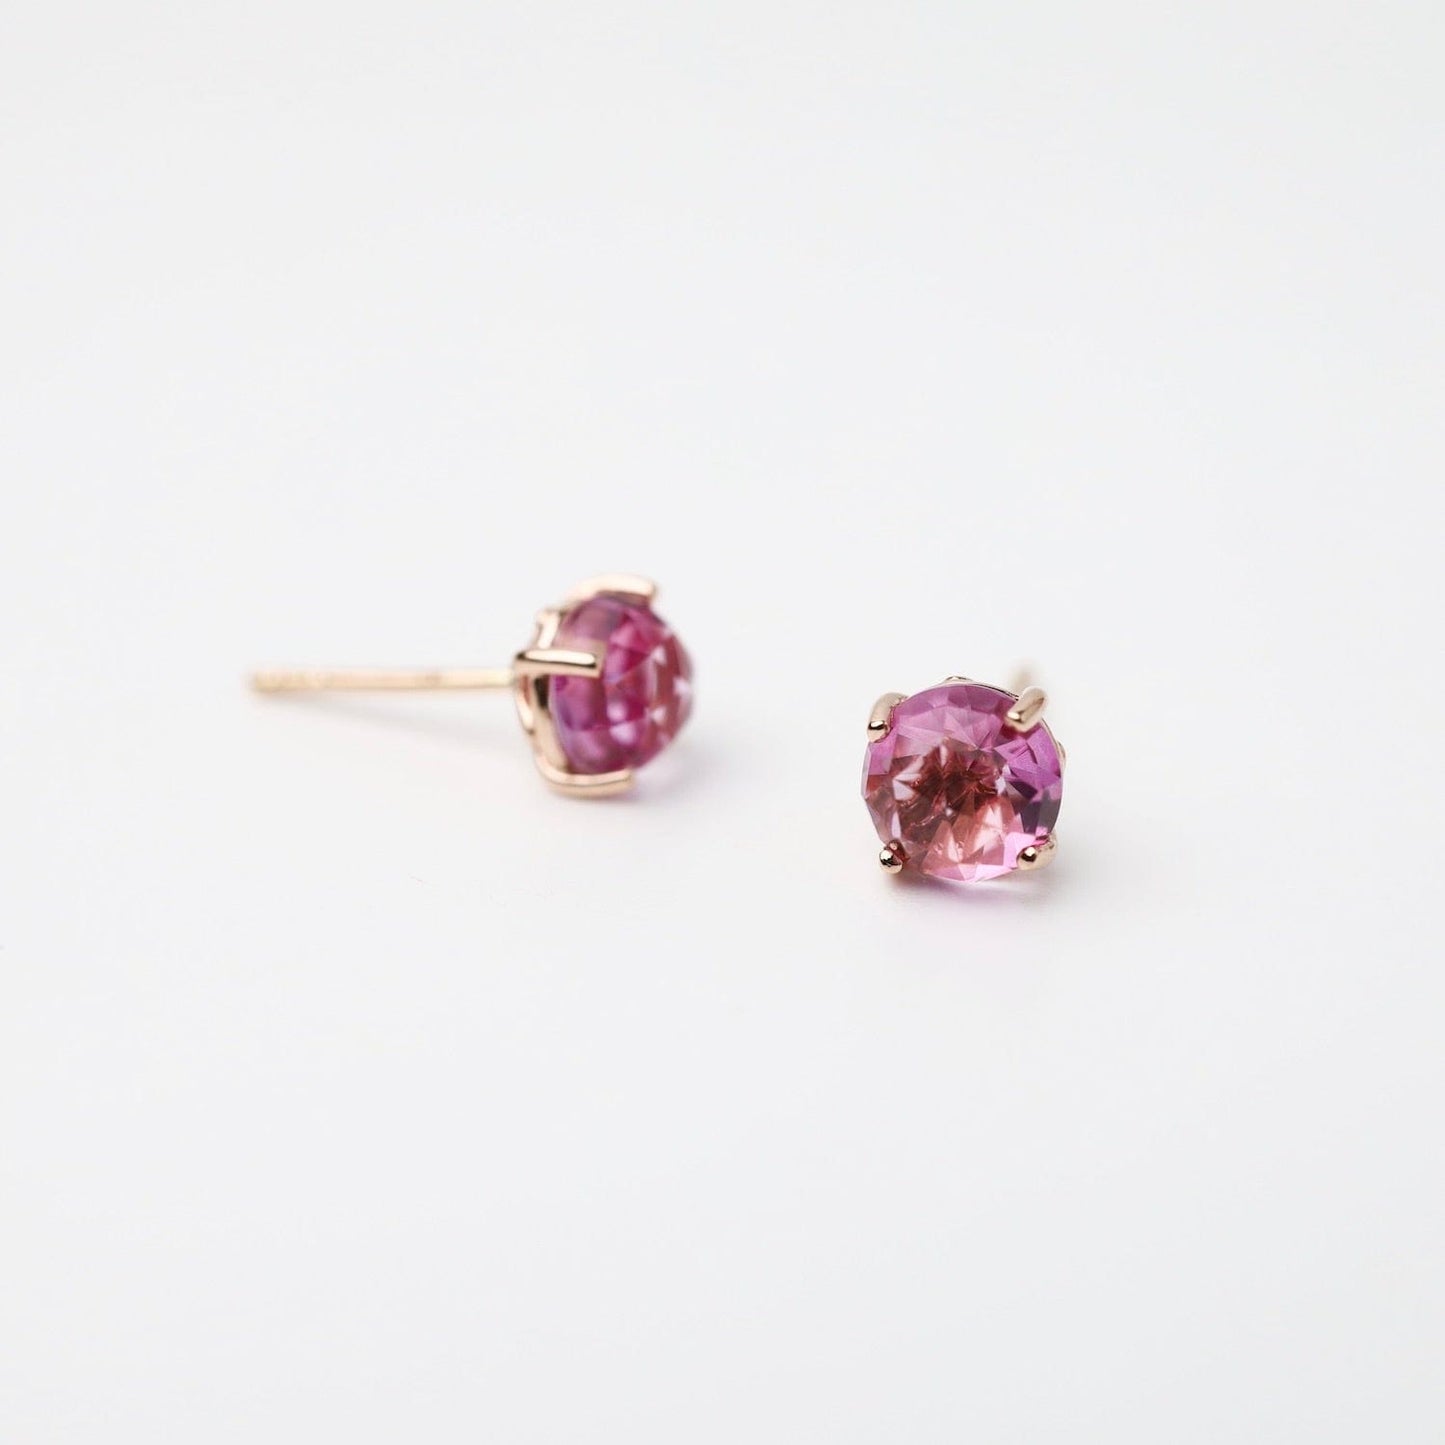 EAR-14K Rose Gold Round Pink Topaz Post Earrings